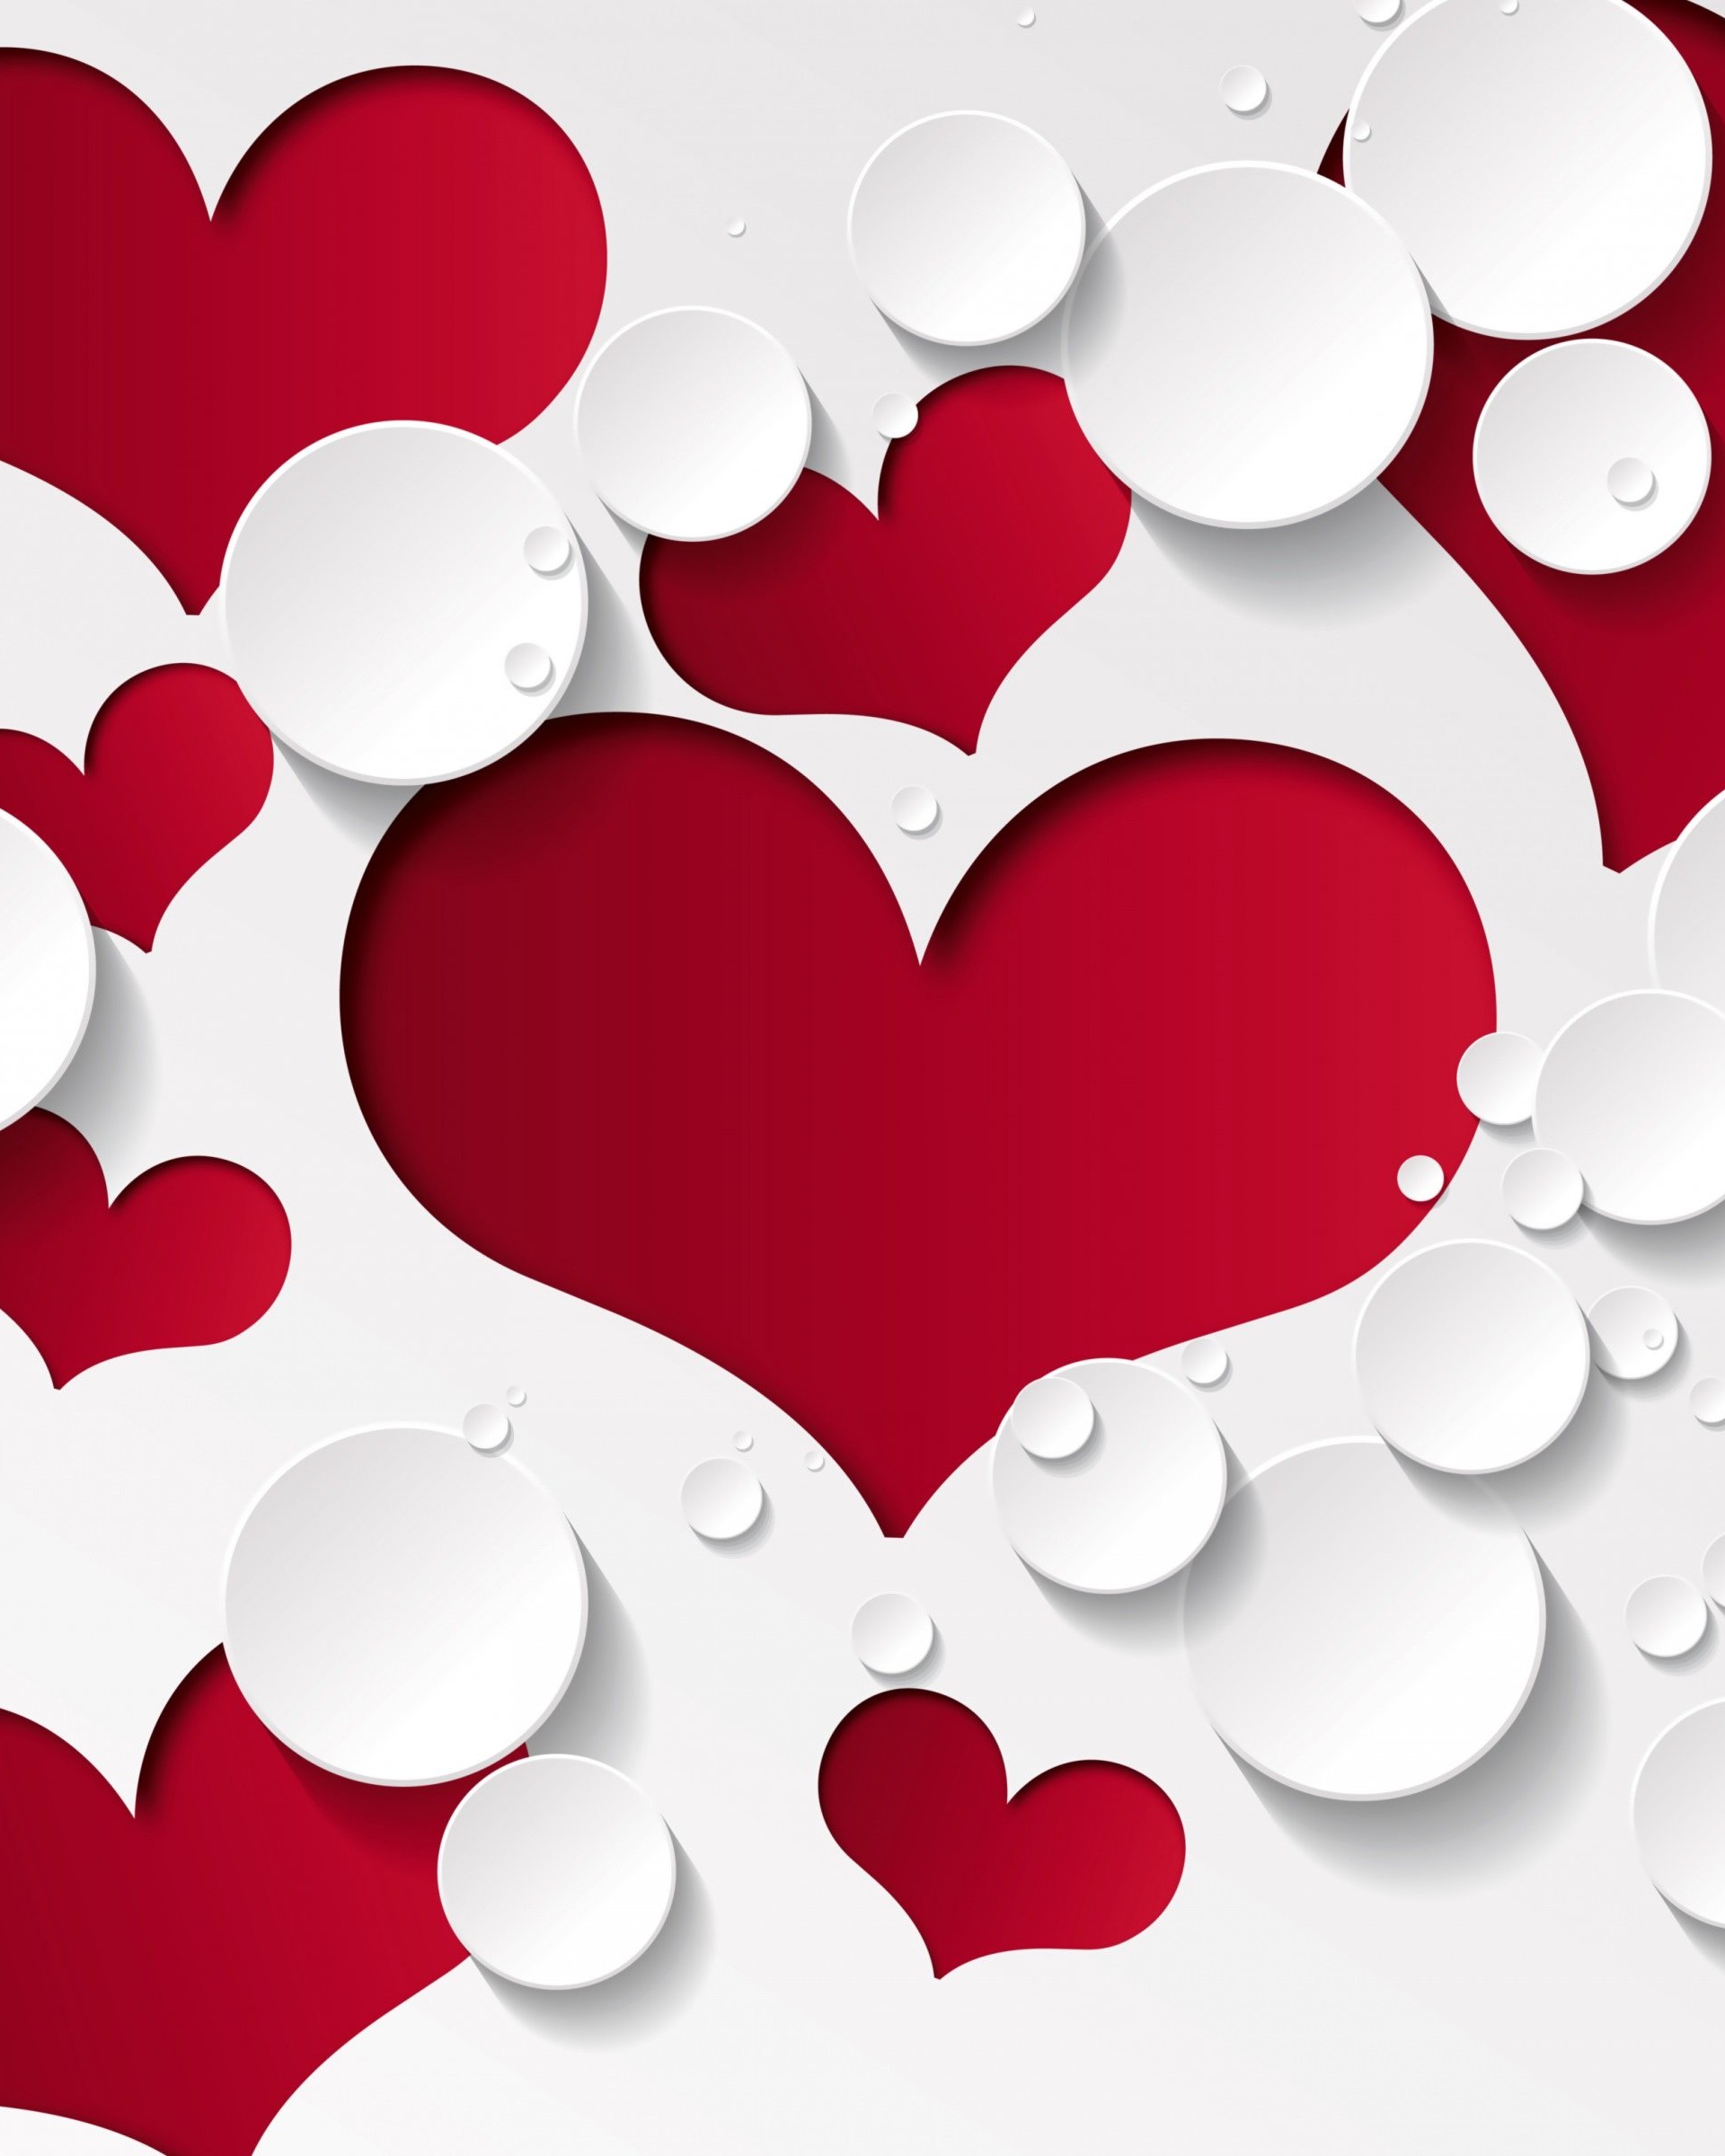 Love Heart Shaped Pattern Wallpaper for Google Nexus 7